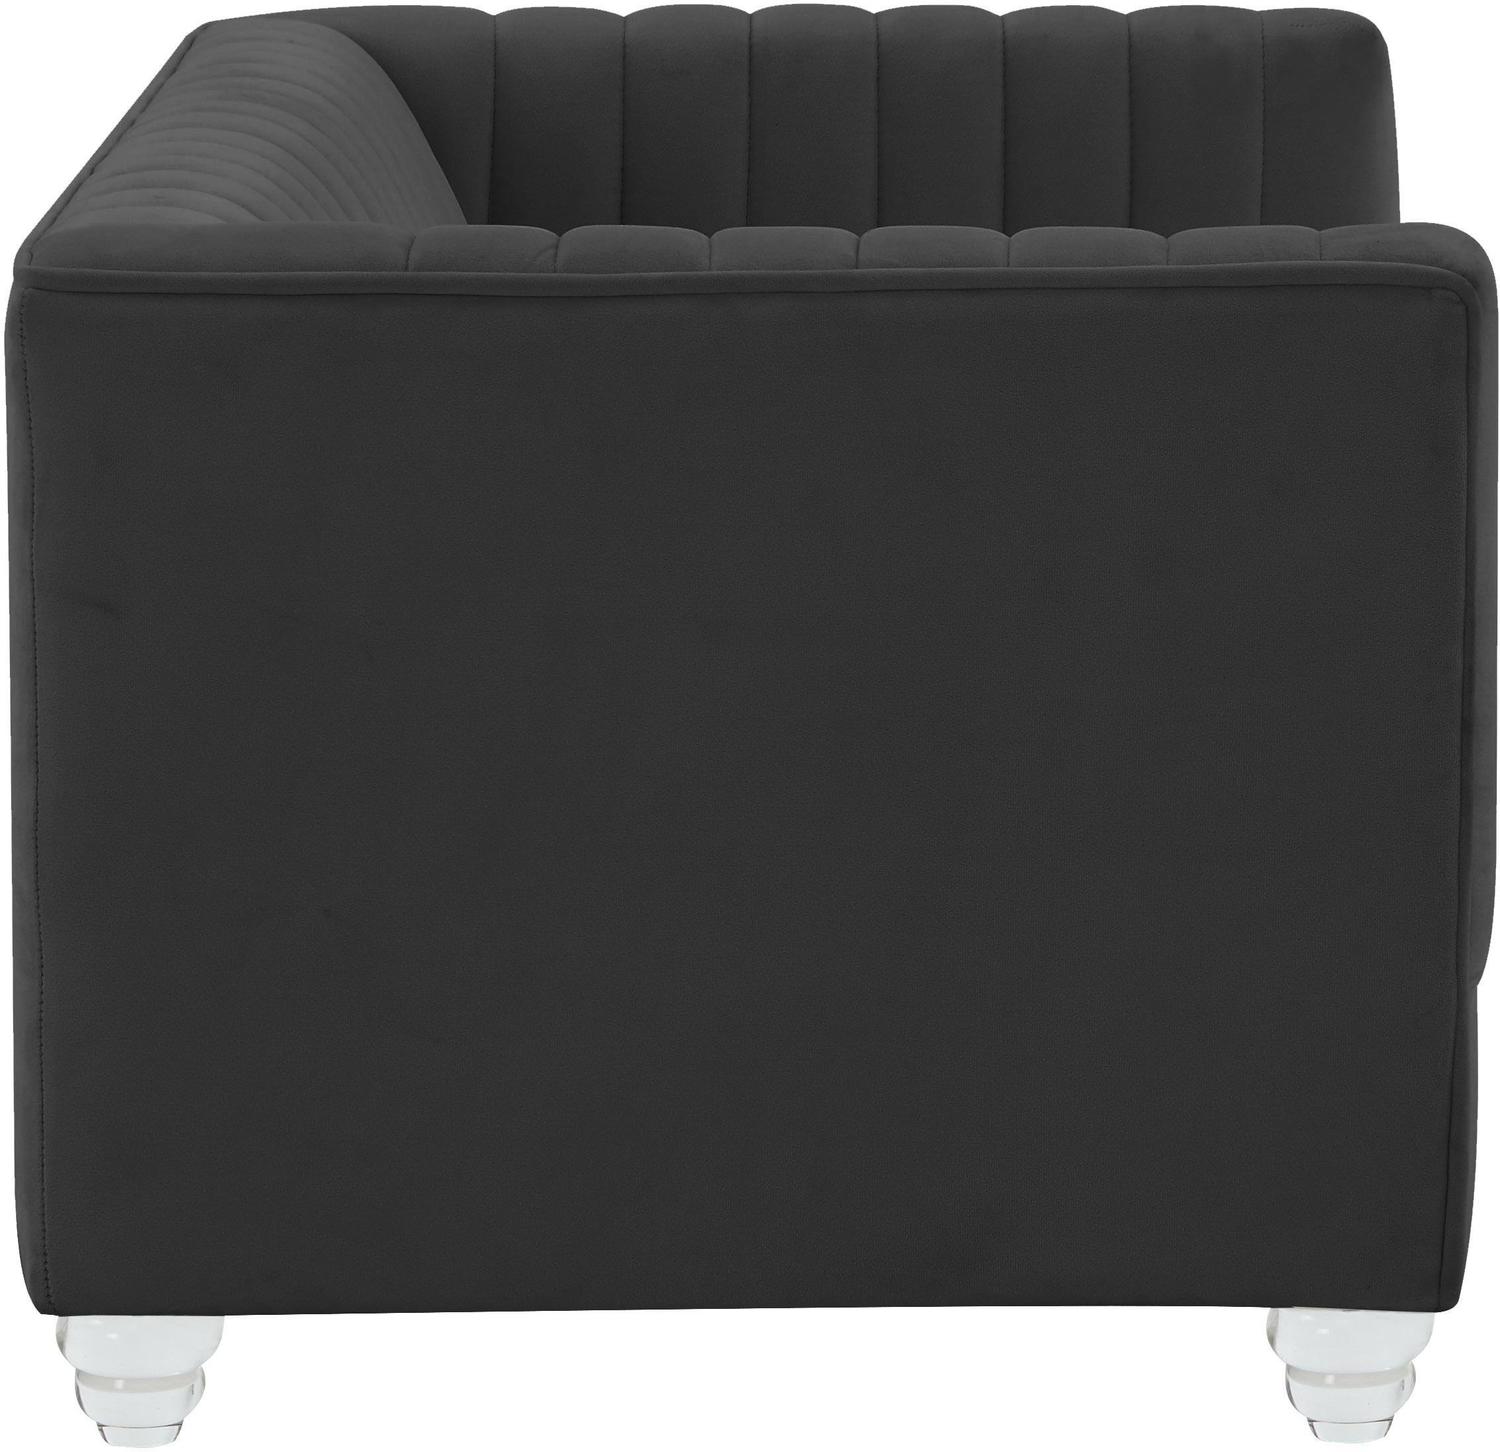 mat for crate Tov Furniture Pet Furniture Black